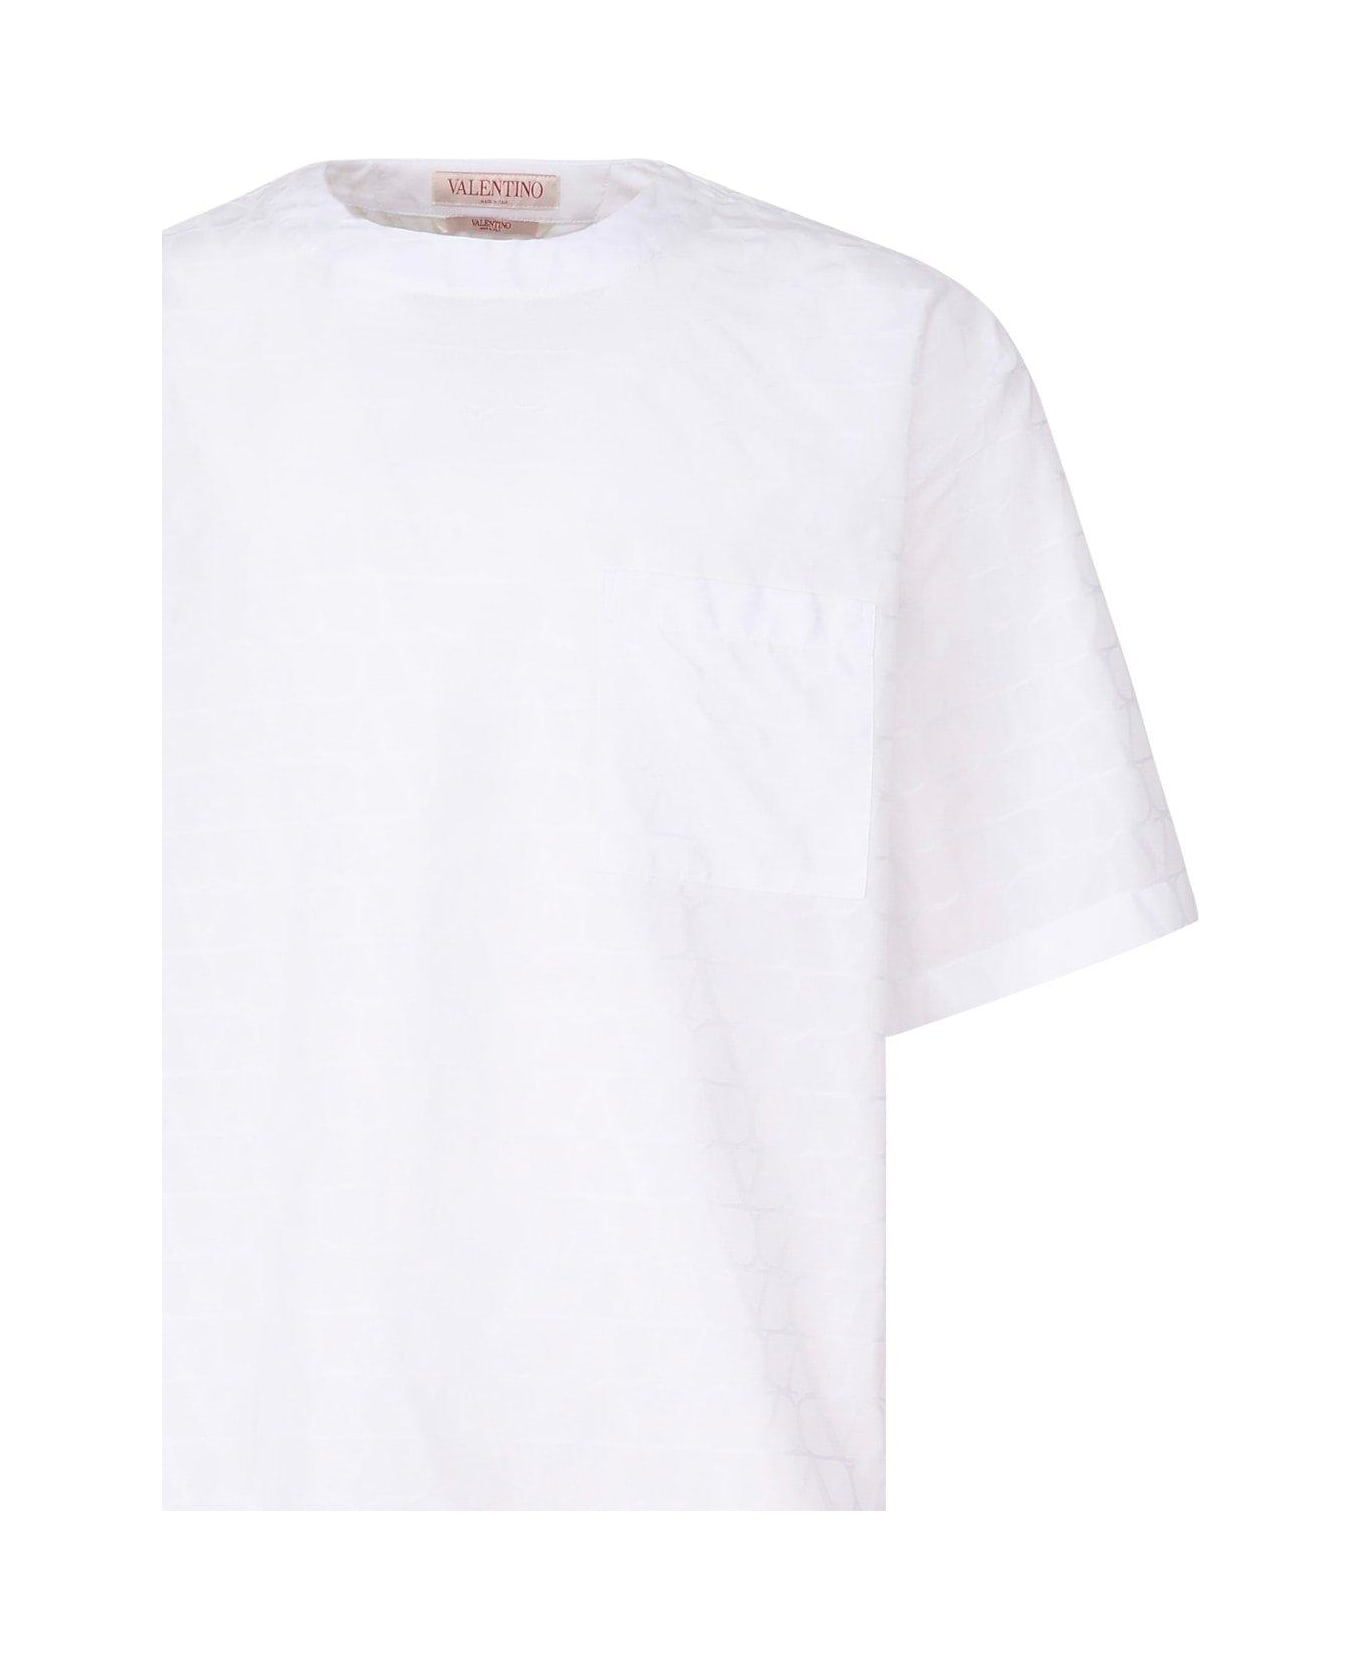 Valentino Garavani Valentino Toile Iconographe Crewneck Short-sleeved T-shirt - White シャツ